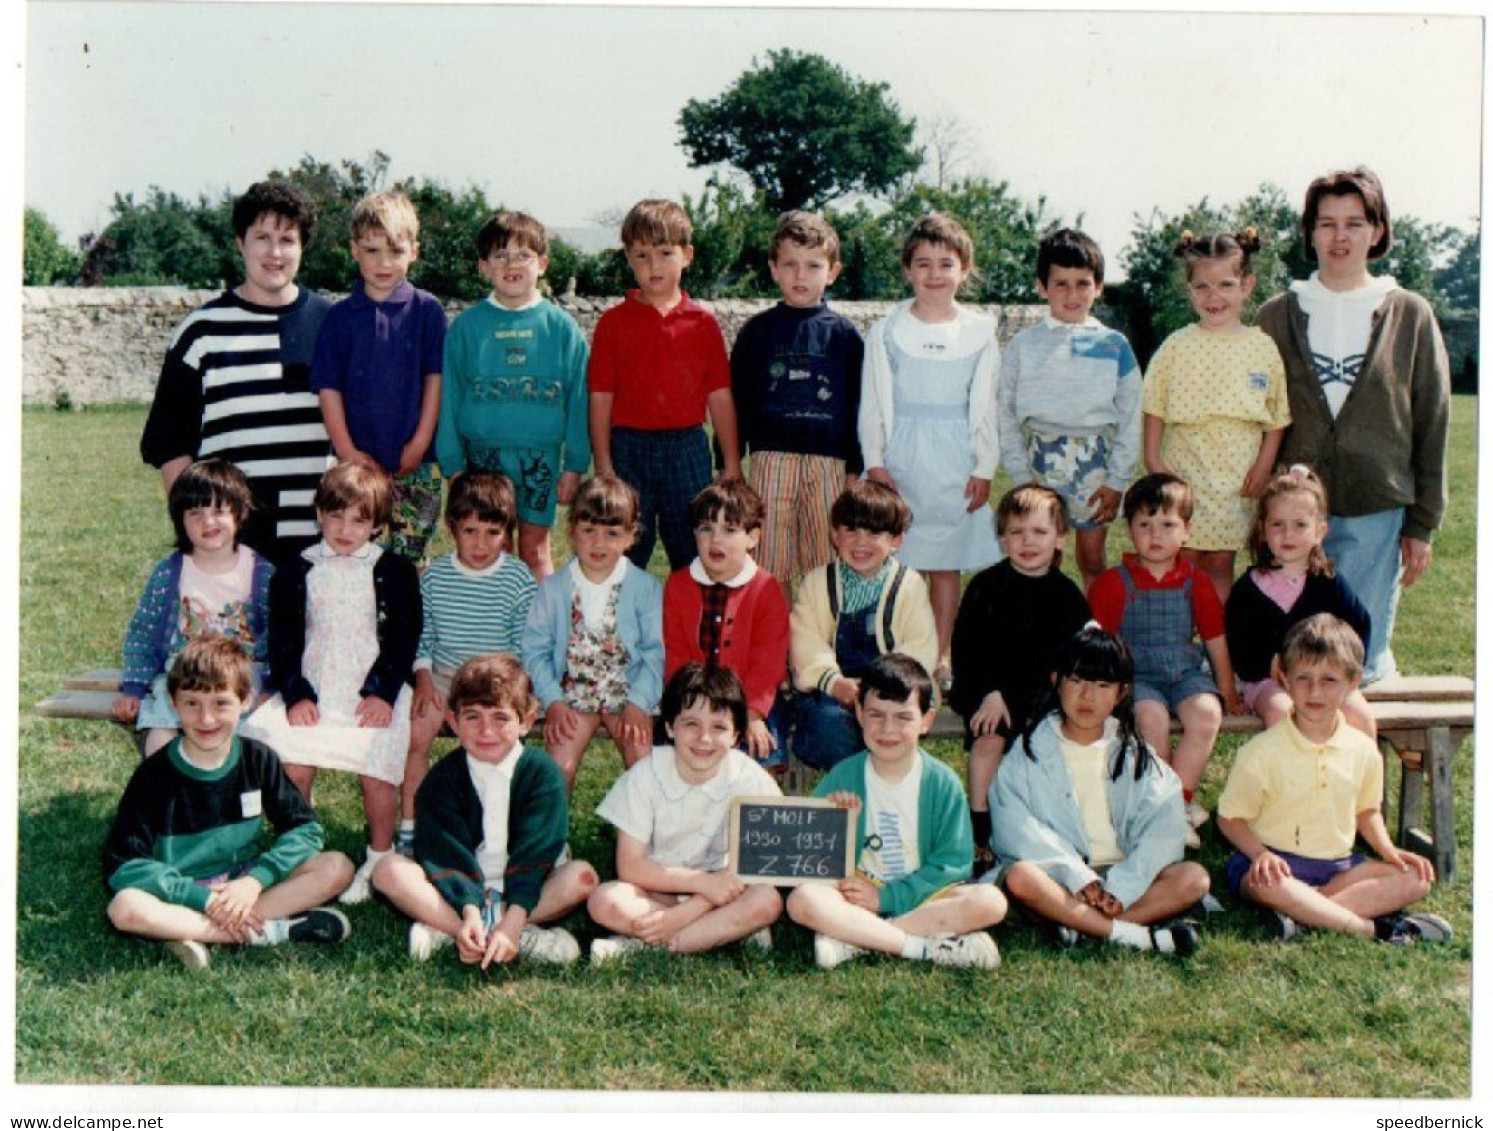 Photo De Classe Saint St MOLF 44 France - école Elève Enfant Année 1990 -1991 Photos Scolaires Angers - Identifizierten Personen